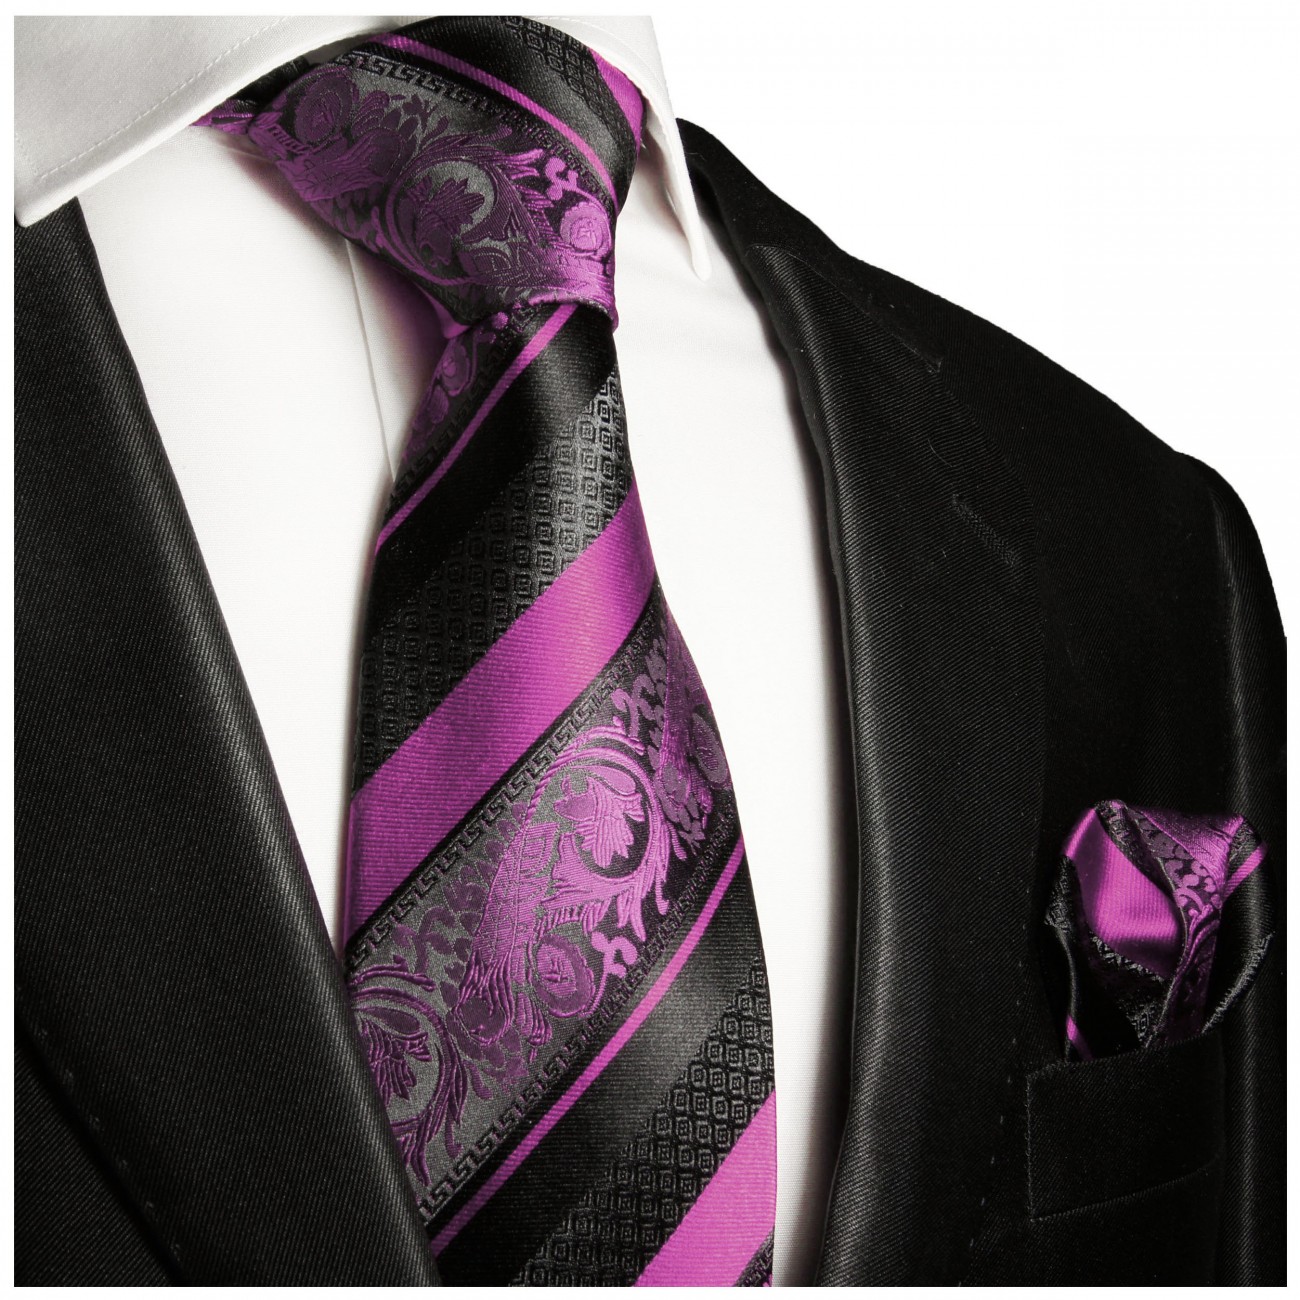 Extra lange Krawatte 165cm - pink barock gestreift